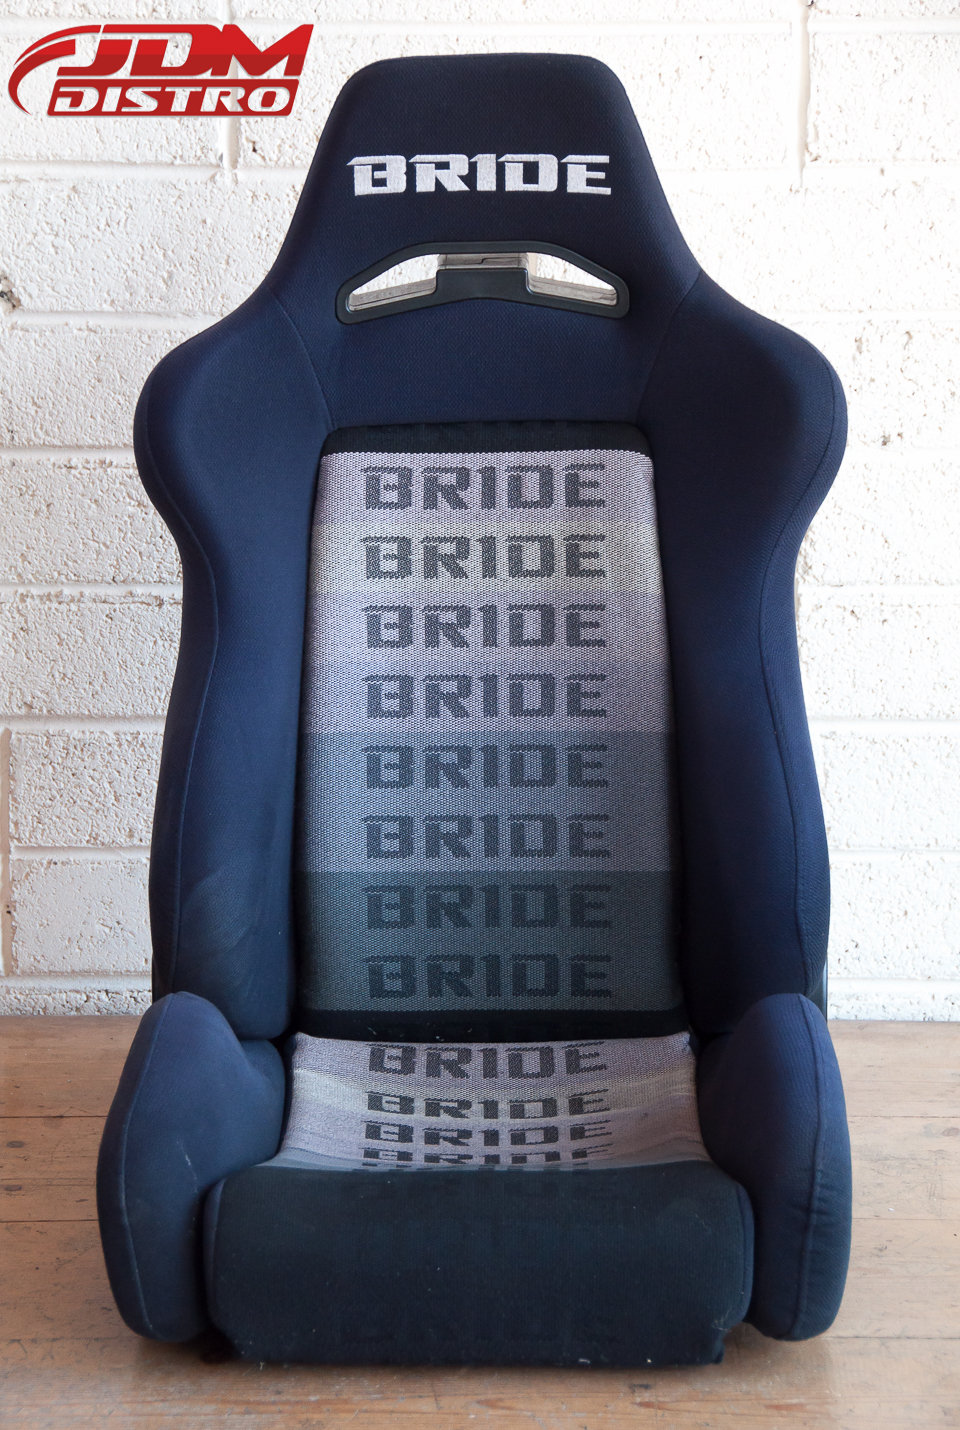 Bride racing seats